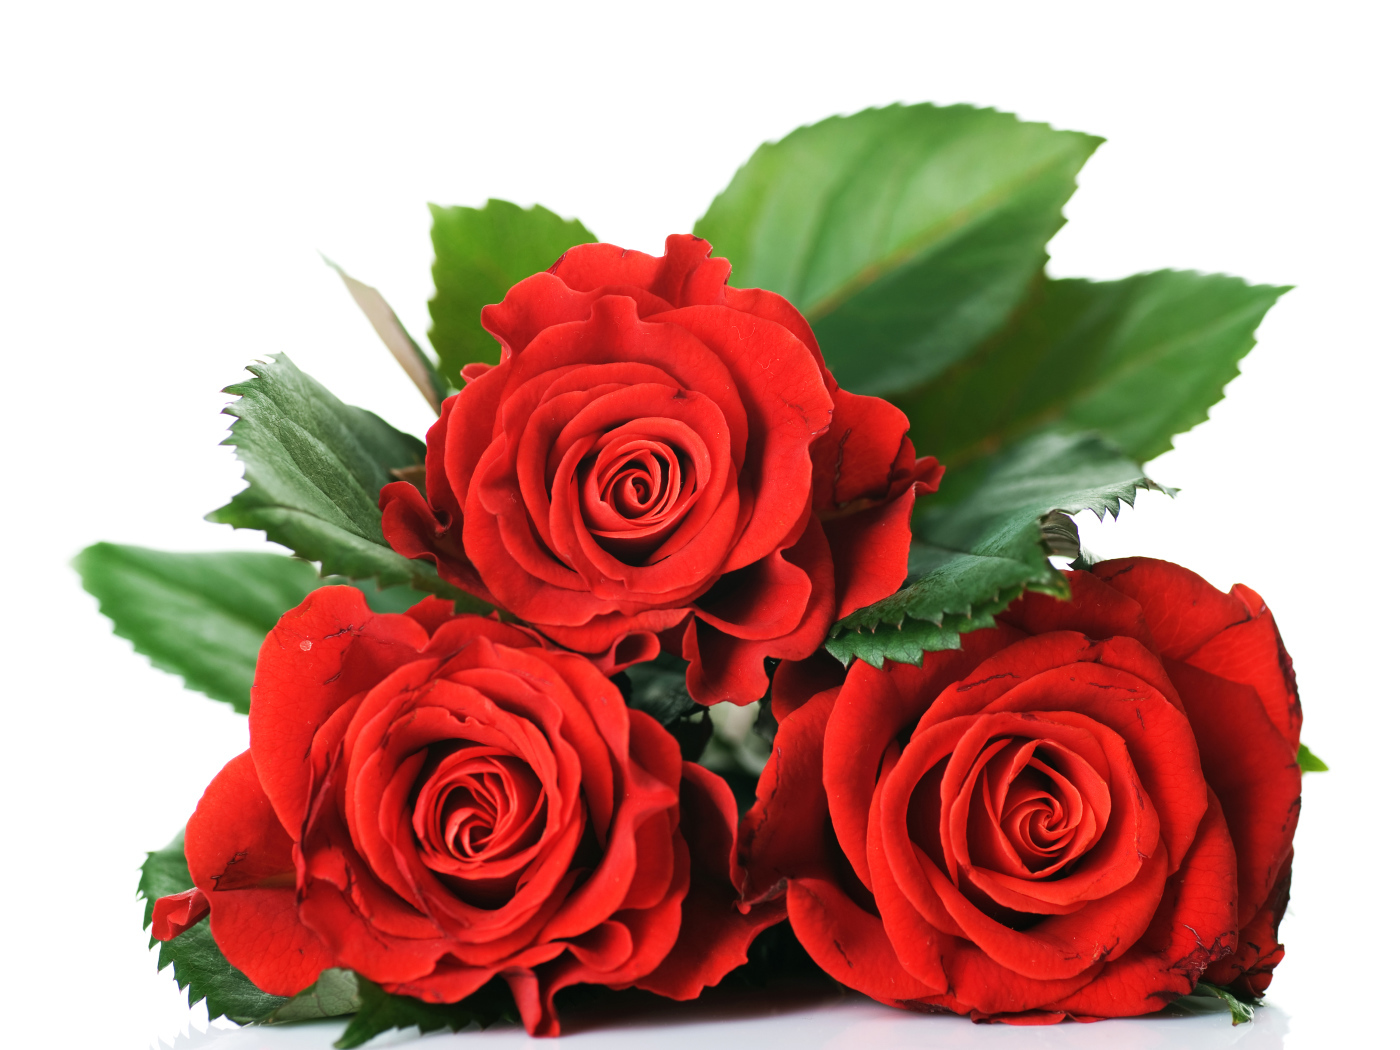 Три красивые красные розы на белом фоне с зелеными листьями